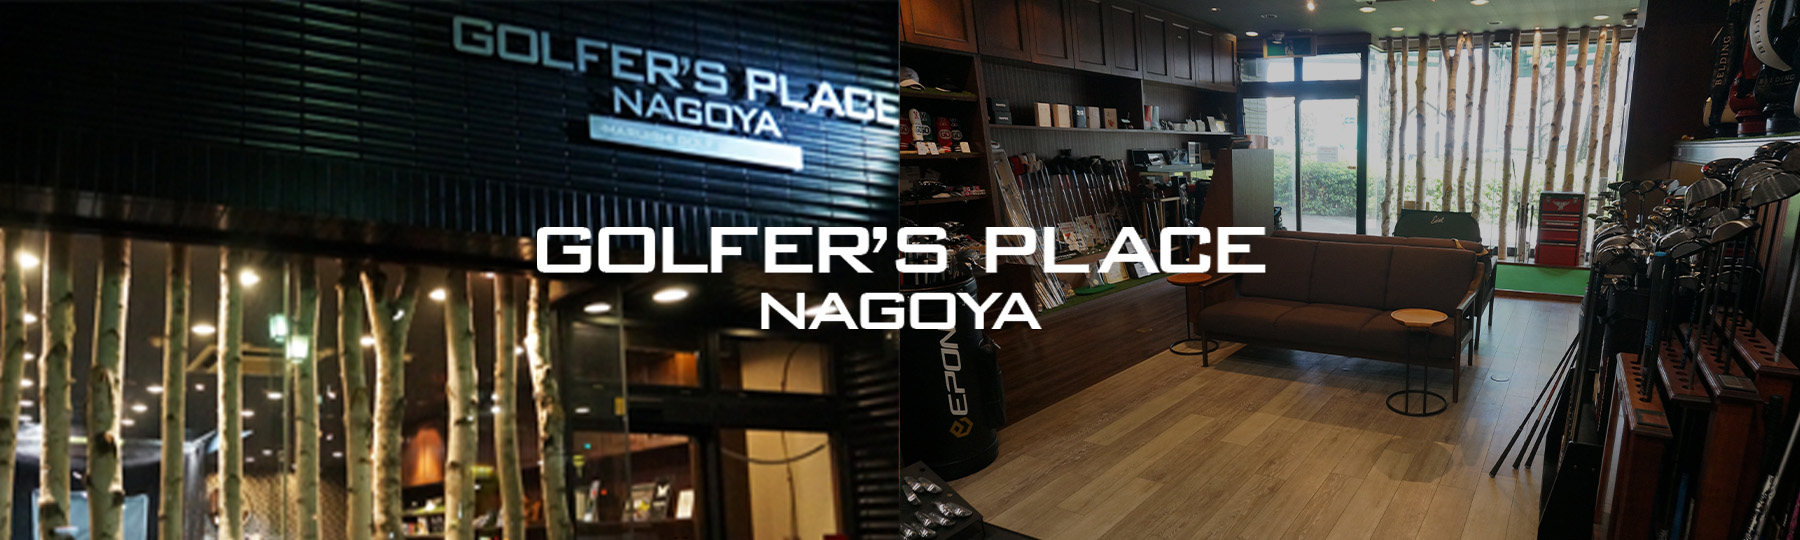 マルイシゴルフはGOLFER'S PLACE NAGOYAへと生まれ変わりました